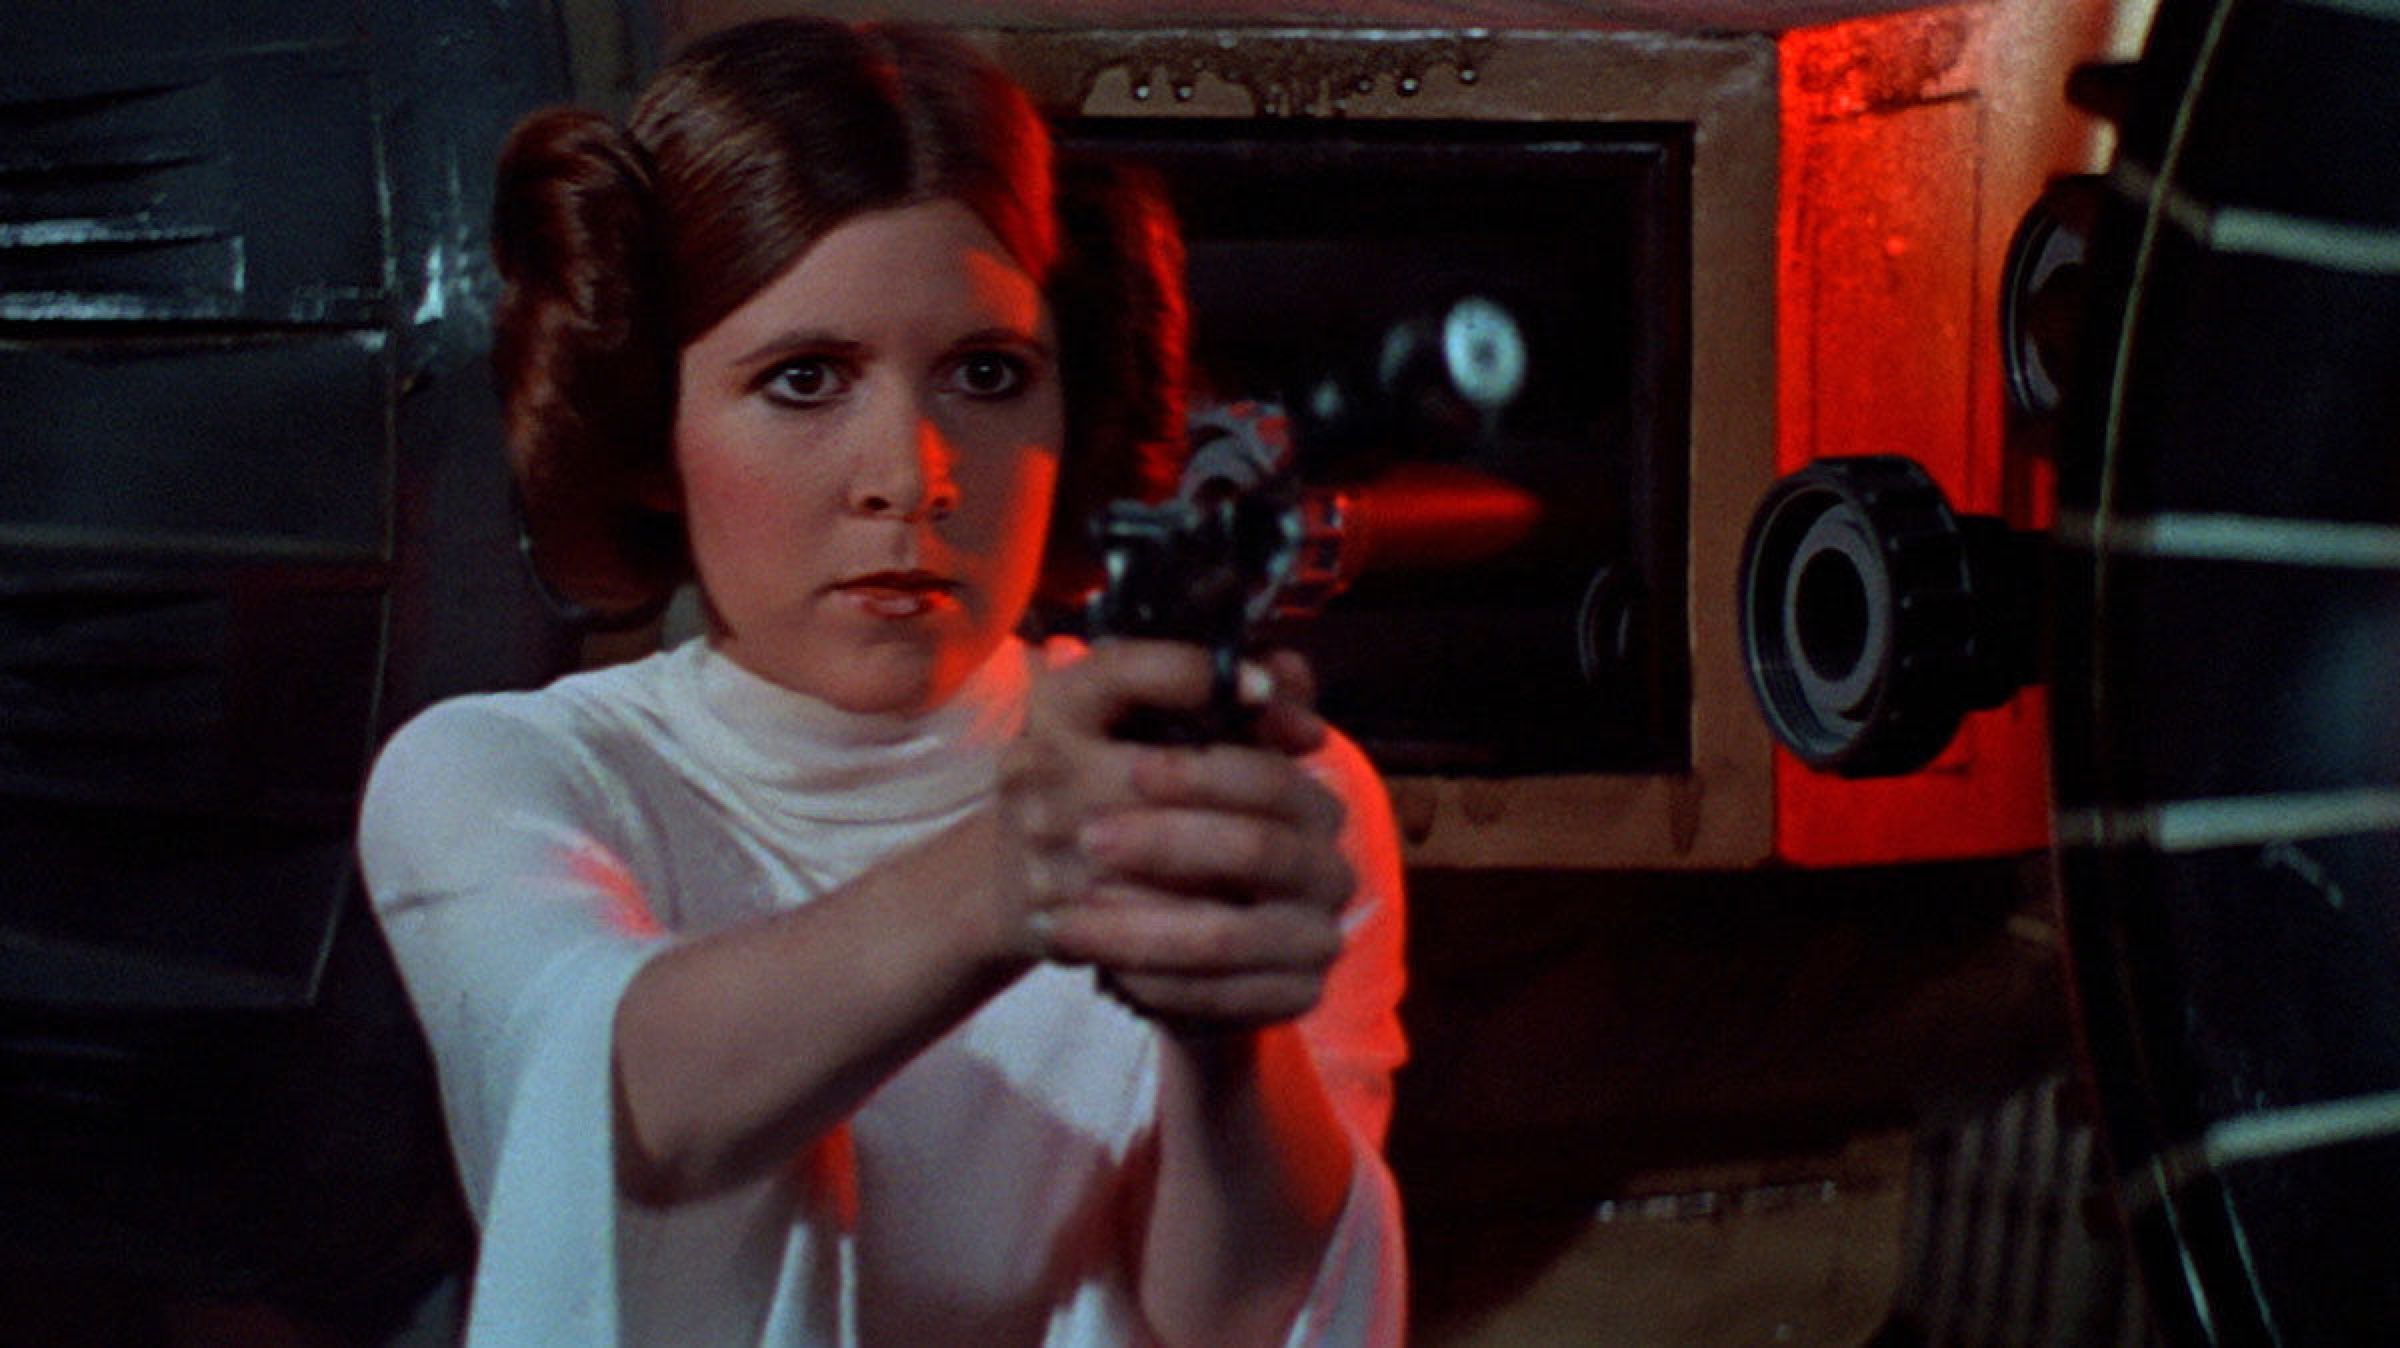 Princess Leia Episode IV A New Hope